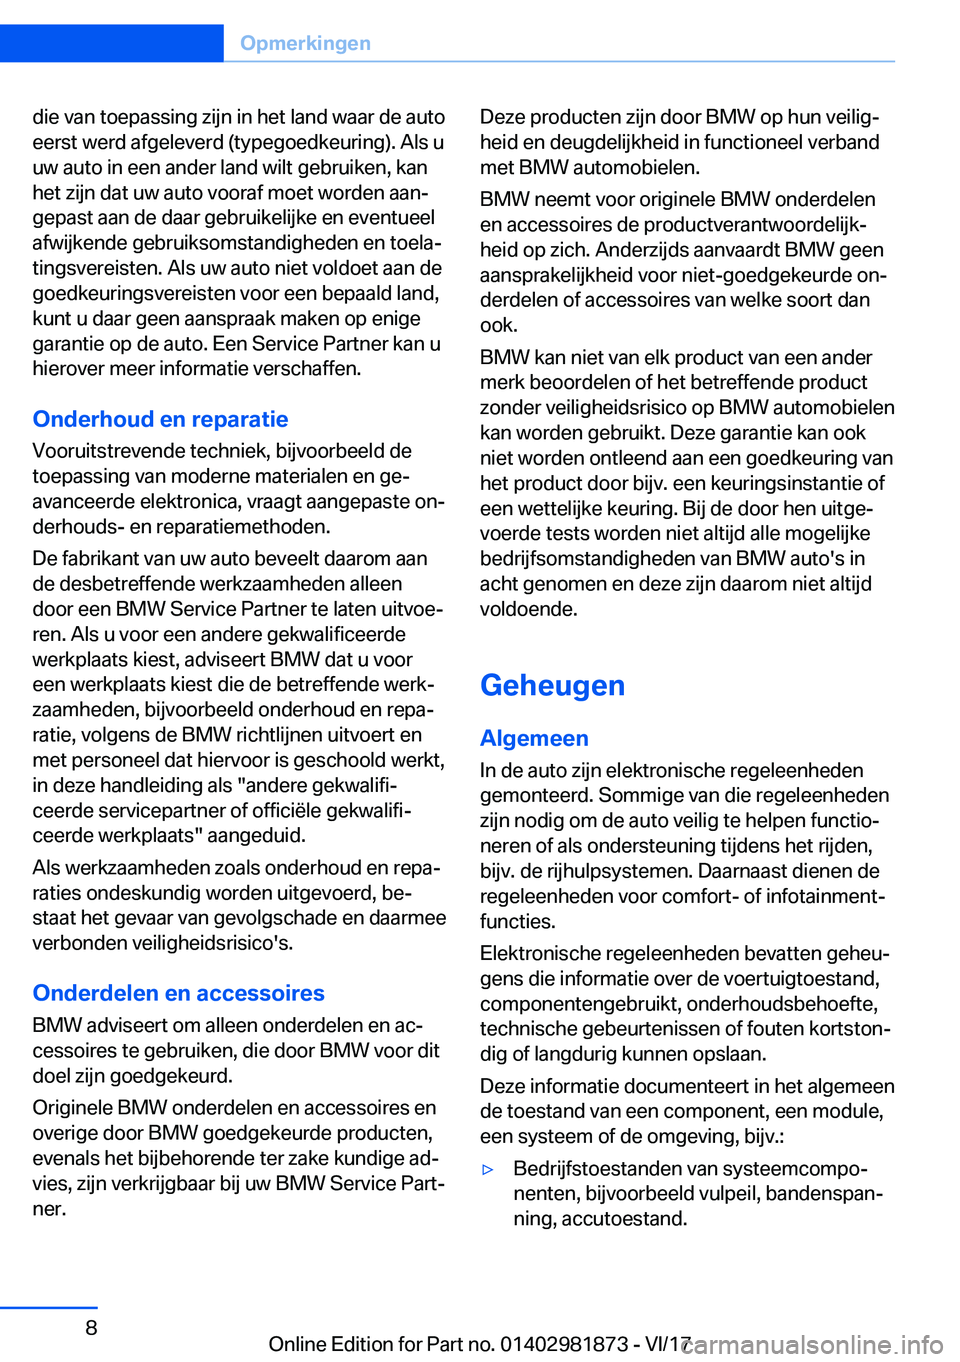 BMW 5 SERIES 2018  Instructieboekjes (in Dutch) �d�i�e� �v�a�n� �t�o�e�p�a�s�s�i�n�g� �z�i�j�n� �i�n� �h�e�t� �l�a�n�d� �w�a�a�r� �d�e� �a�u�t�o
�e�e�r�s�t� �w�e�r�d� �a�f�g�e�l�e�v�e�r�d� �(�t�y�p�e�g�o�e�d�k�e�u�r�i�n�g�)�.� �A�l�s� �u �u�w� �a�u